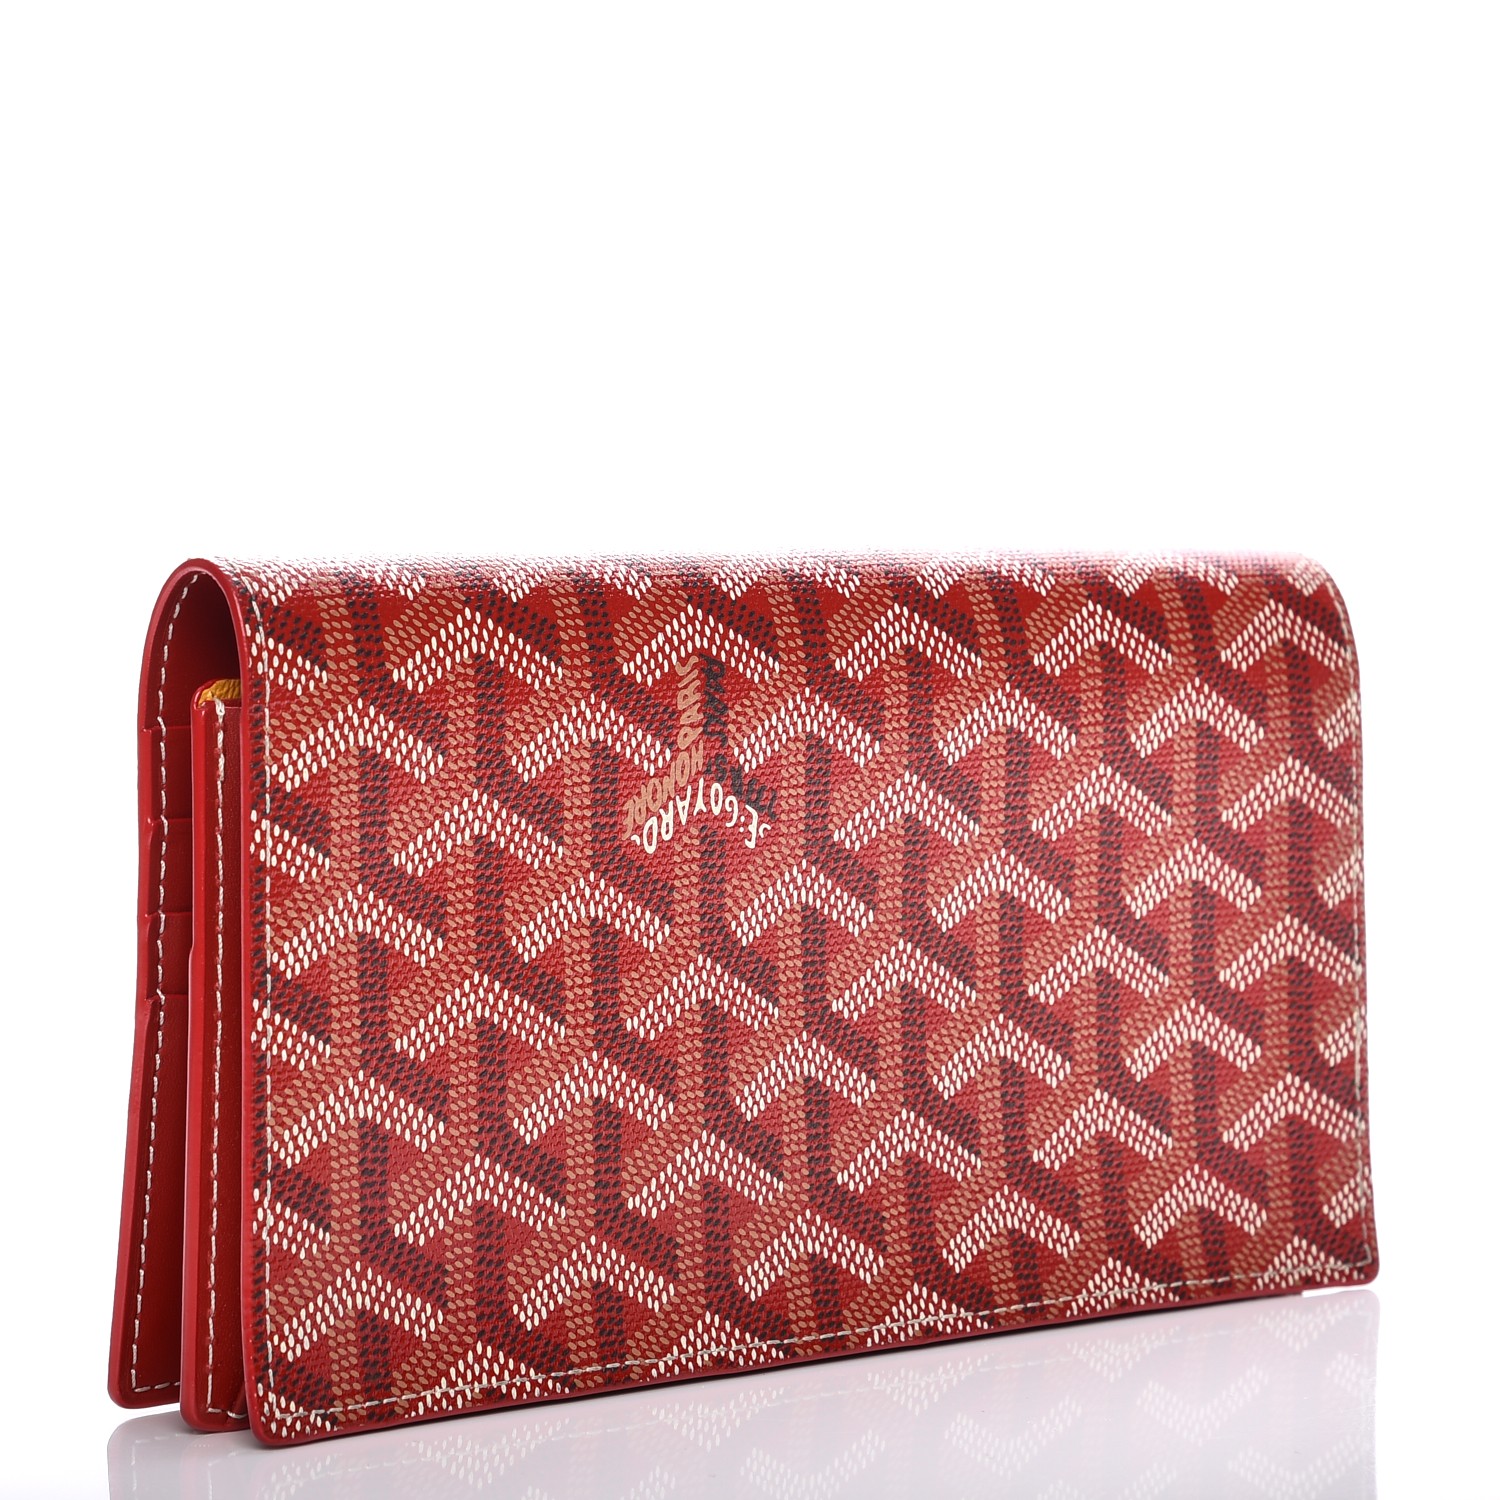 GOYARD Goyardine Richelieu Wallet Red 216600 | FASHIONPHILE